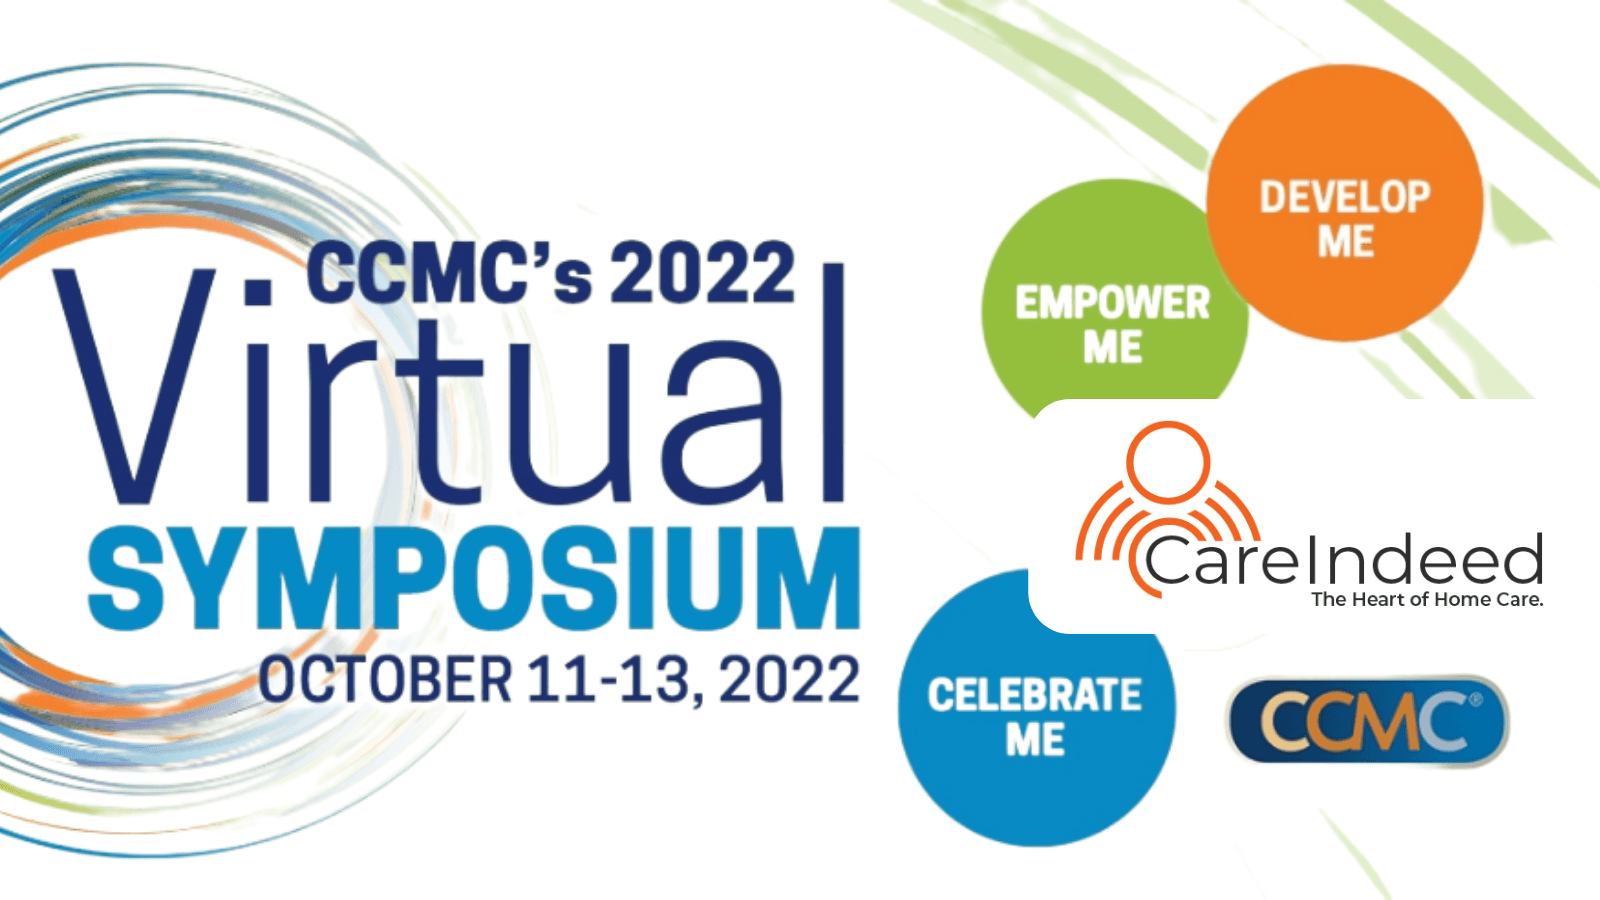 CCMC's 2022 Virtual Symposium